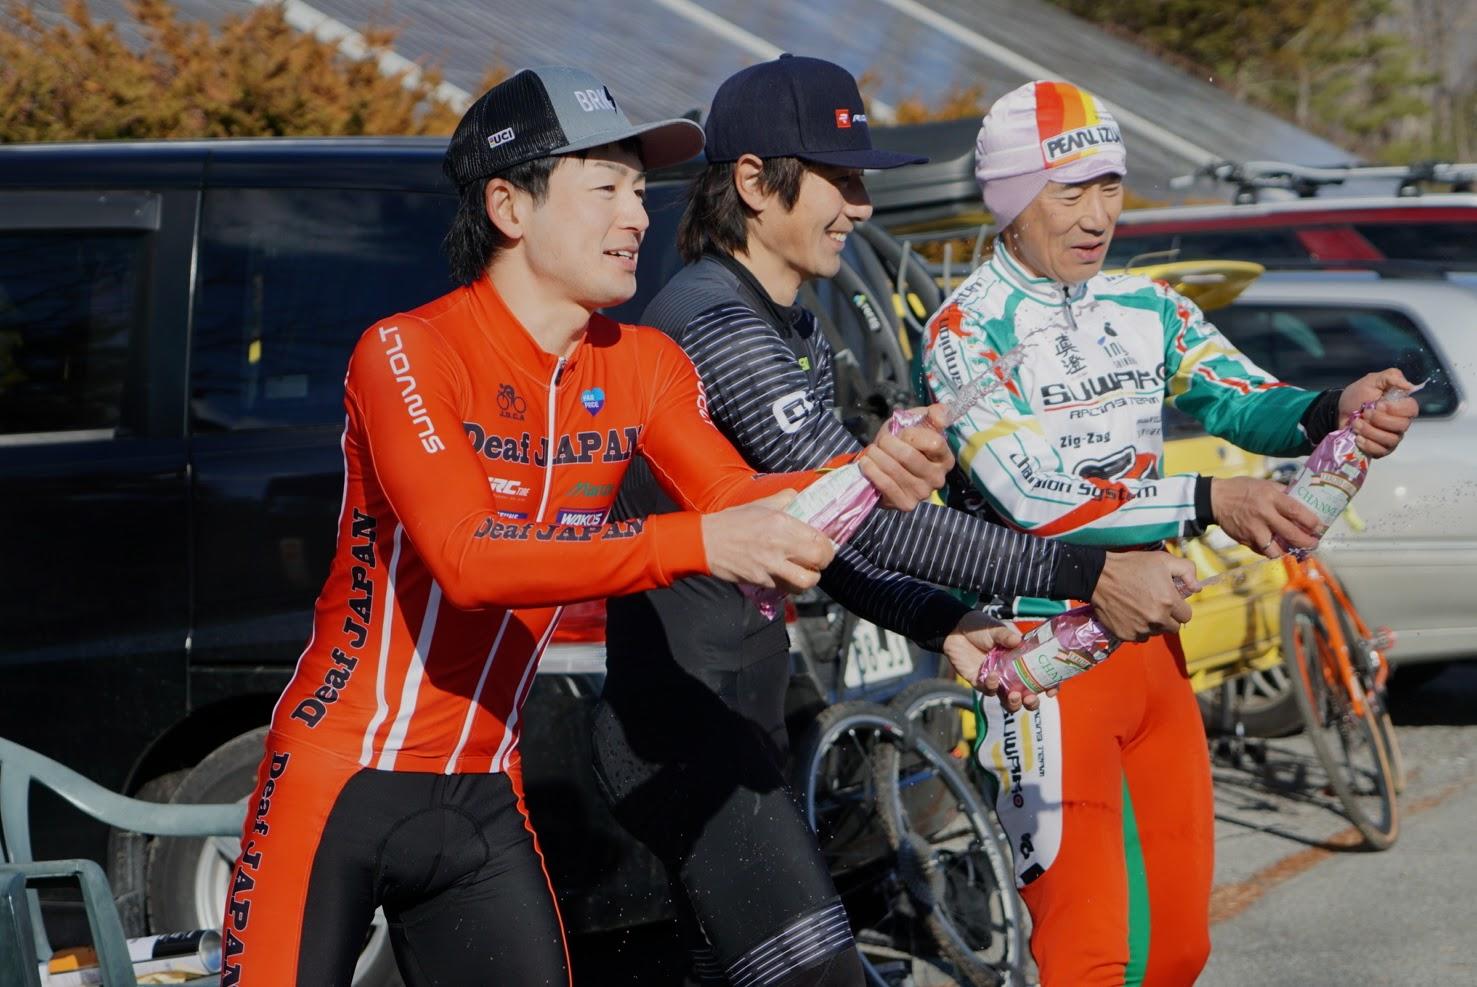 https://www.cyclocross.jp/news/DSC09124.JPG